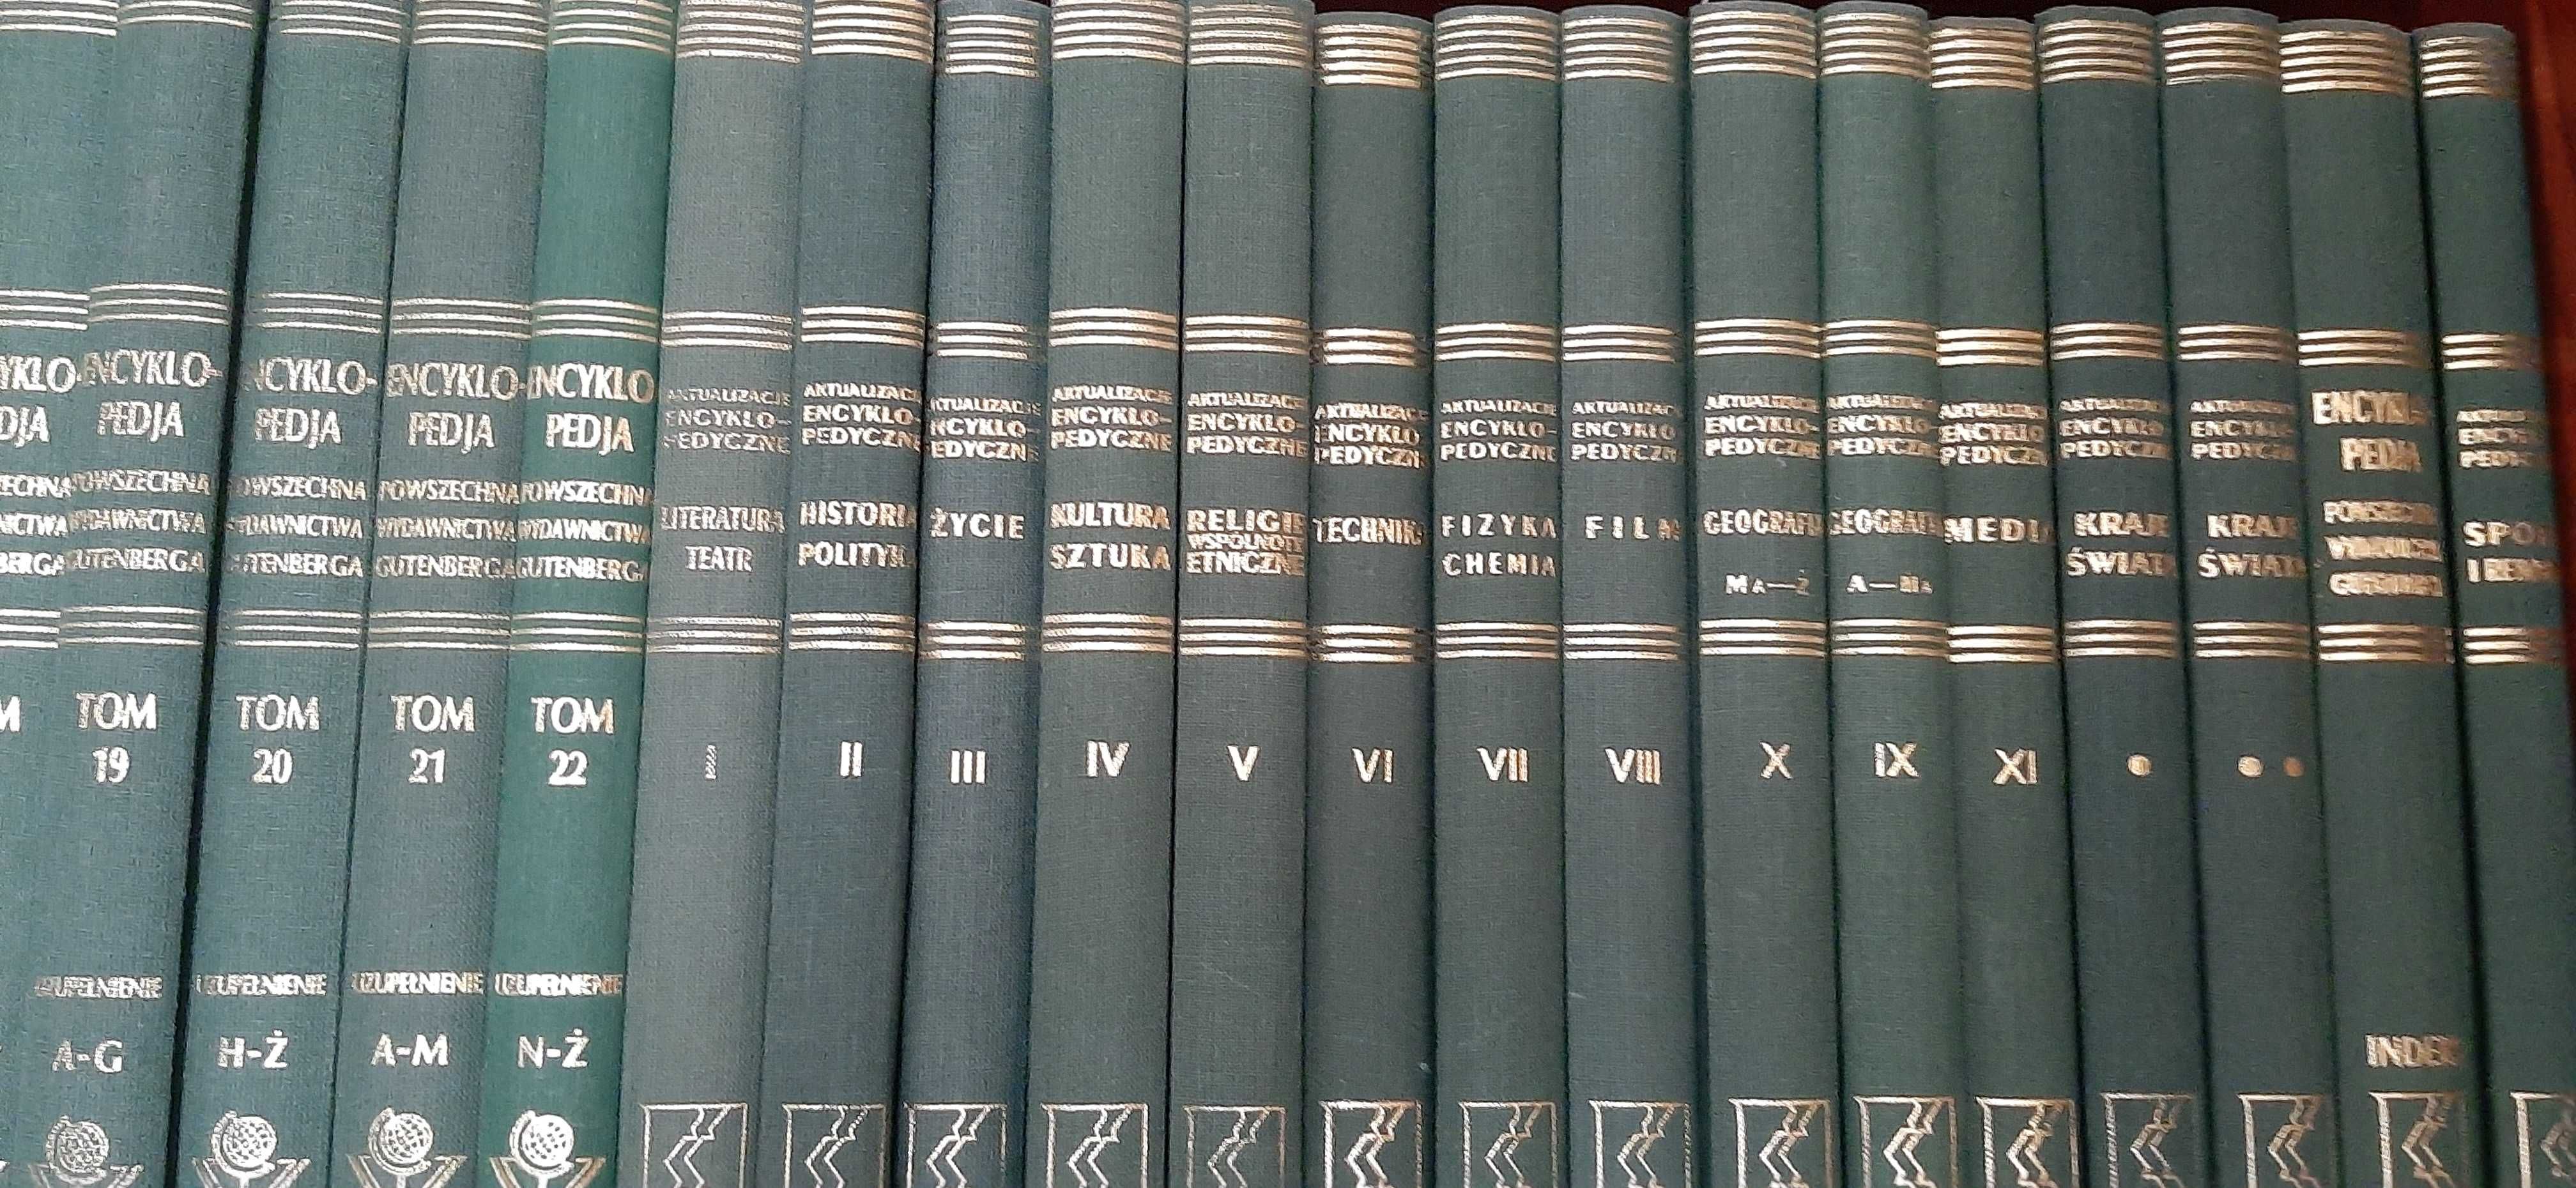 Wielka encyklopedia Gutenberga, reprint wyd. Kurpisz, komplet, unikat